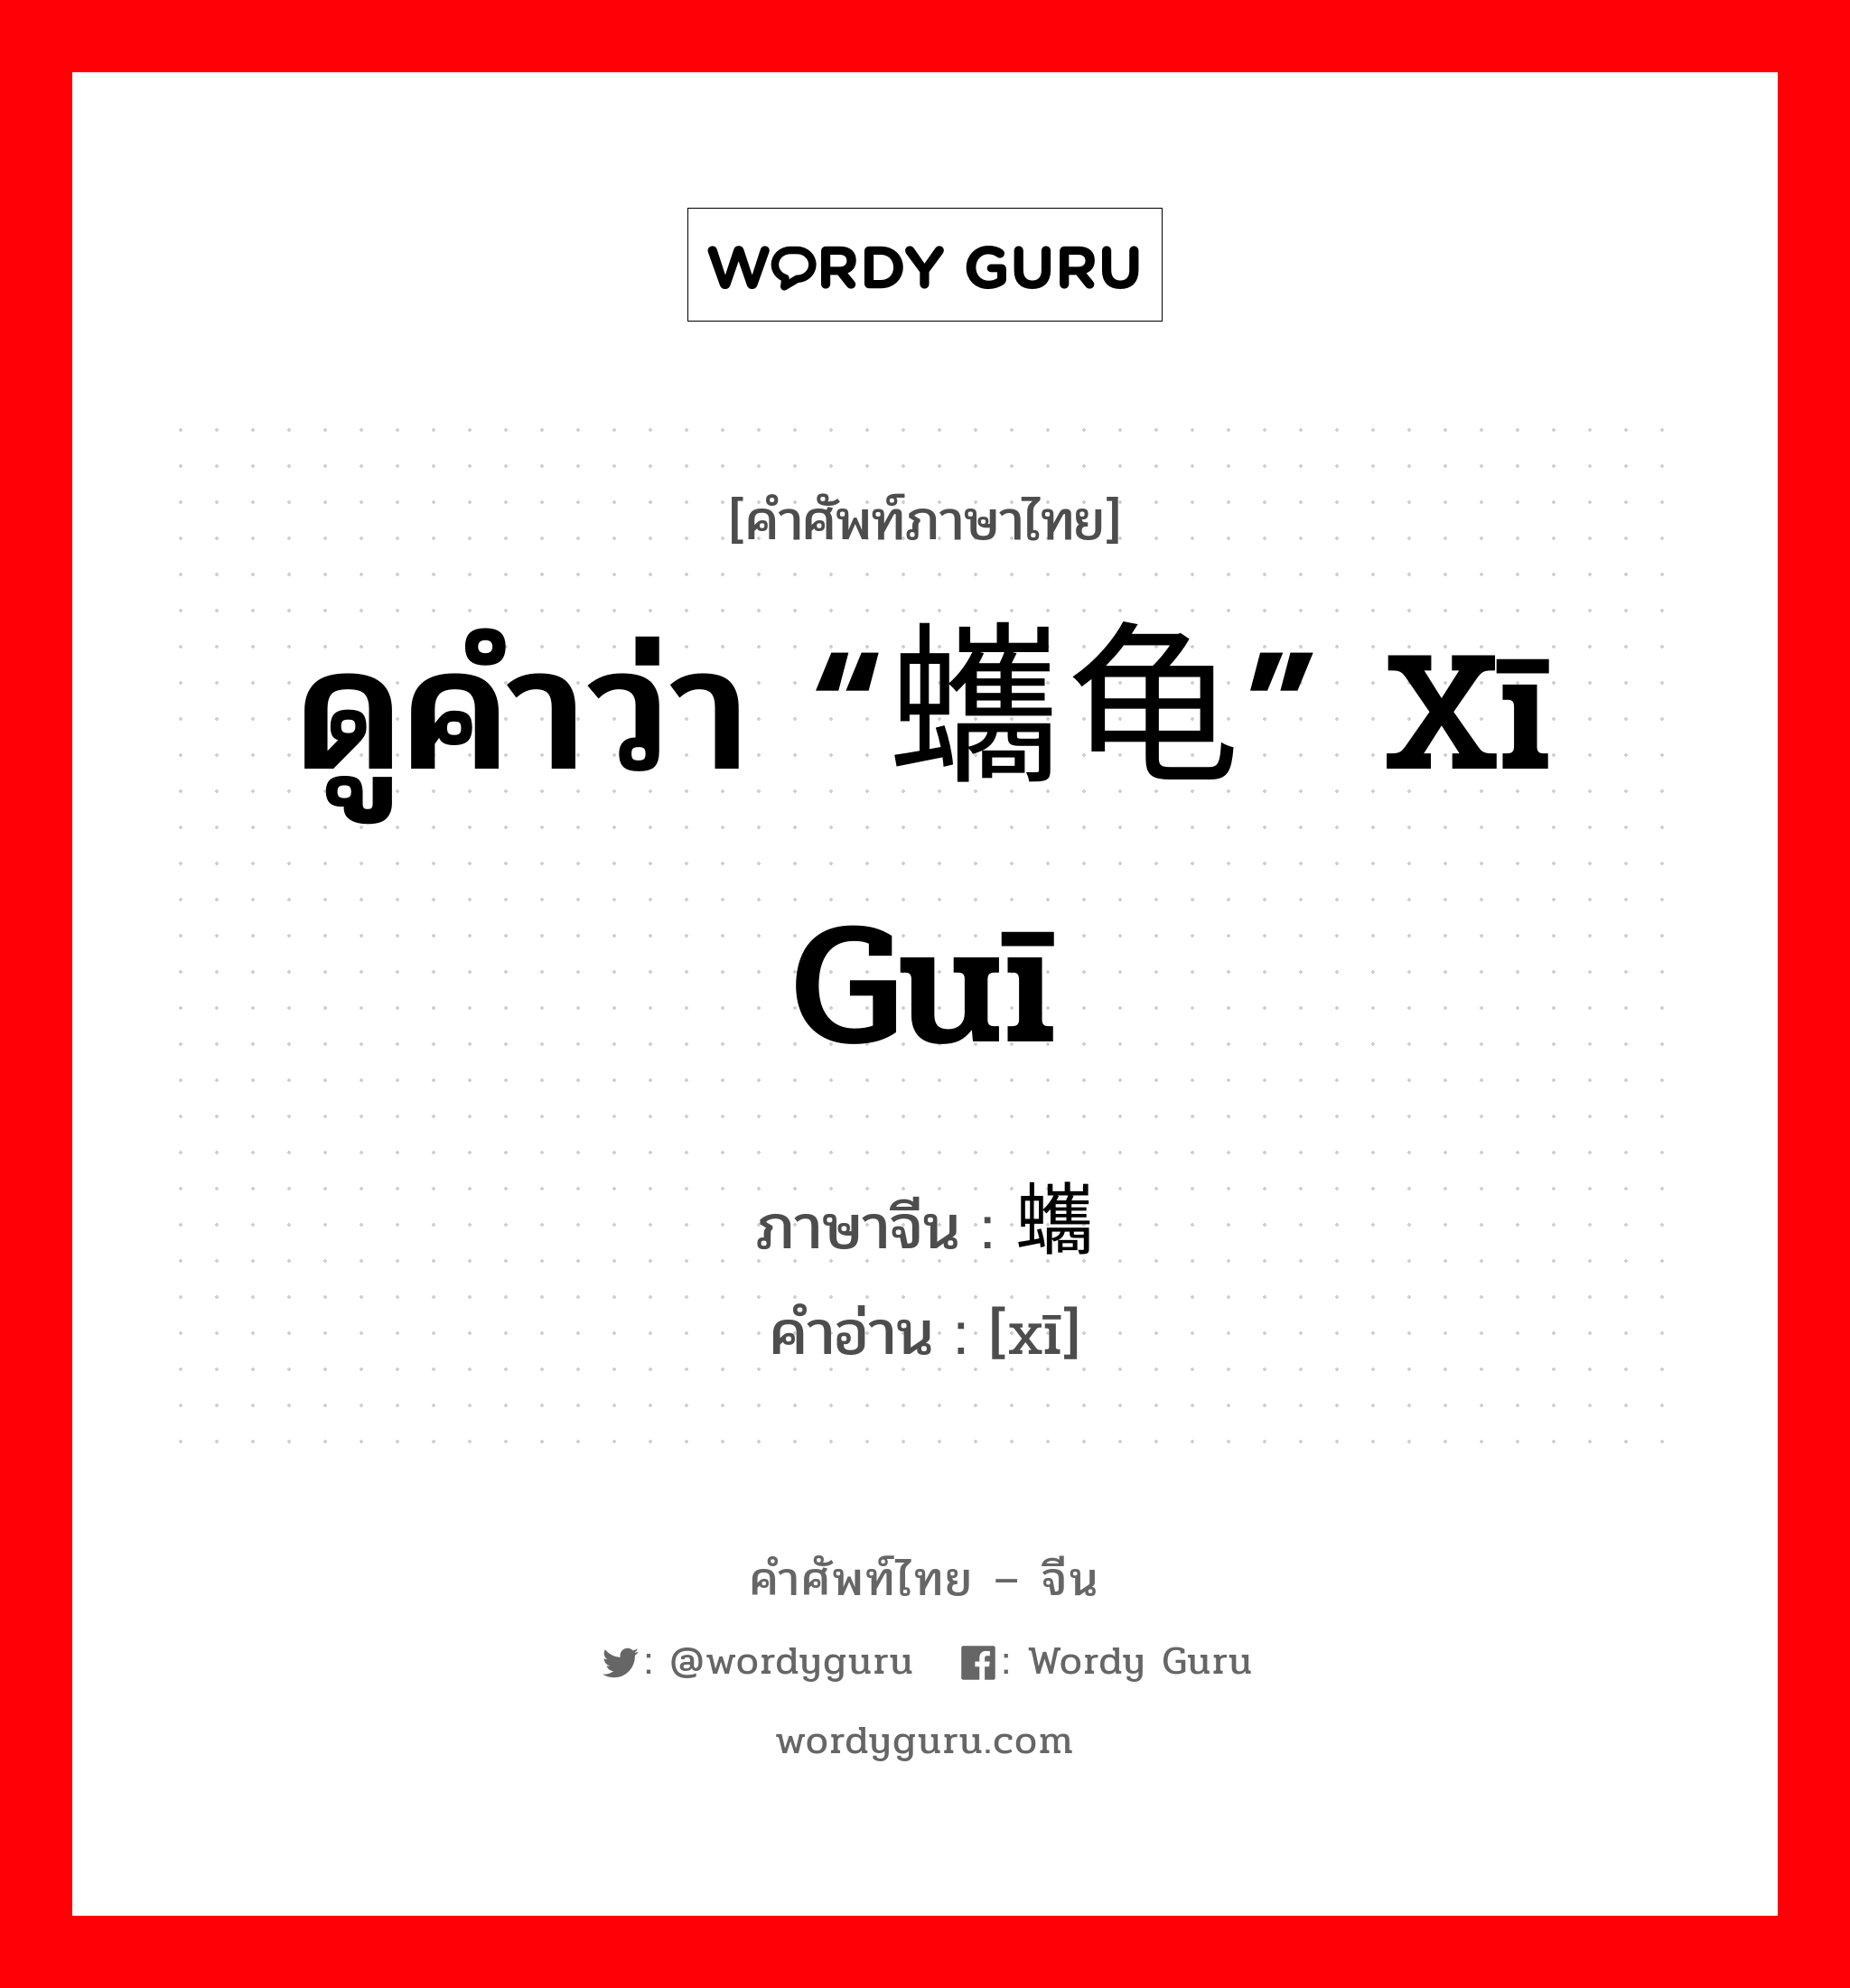 ดูคำว่า “蠵龟” xī guī ภาษาจีนคืออะไร, คำศัพท์ภาษาไทย - จีน ดูคำว่า “蠵龟” xī guī ภาษาจีน 蠵 คำอ่าน [xī]